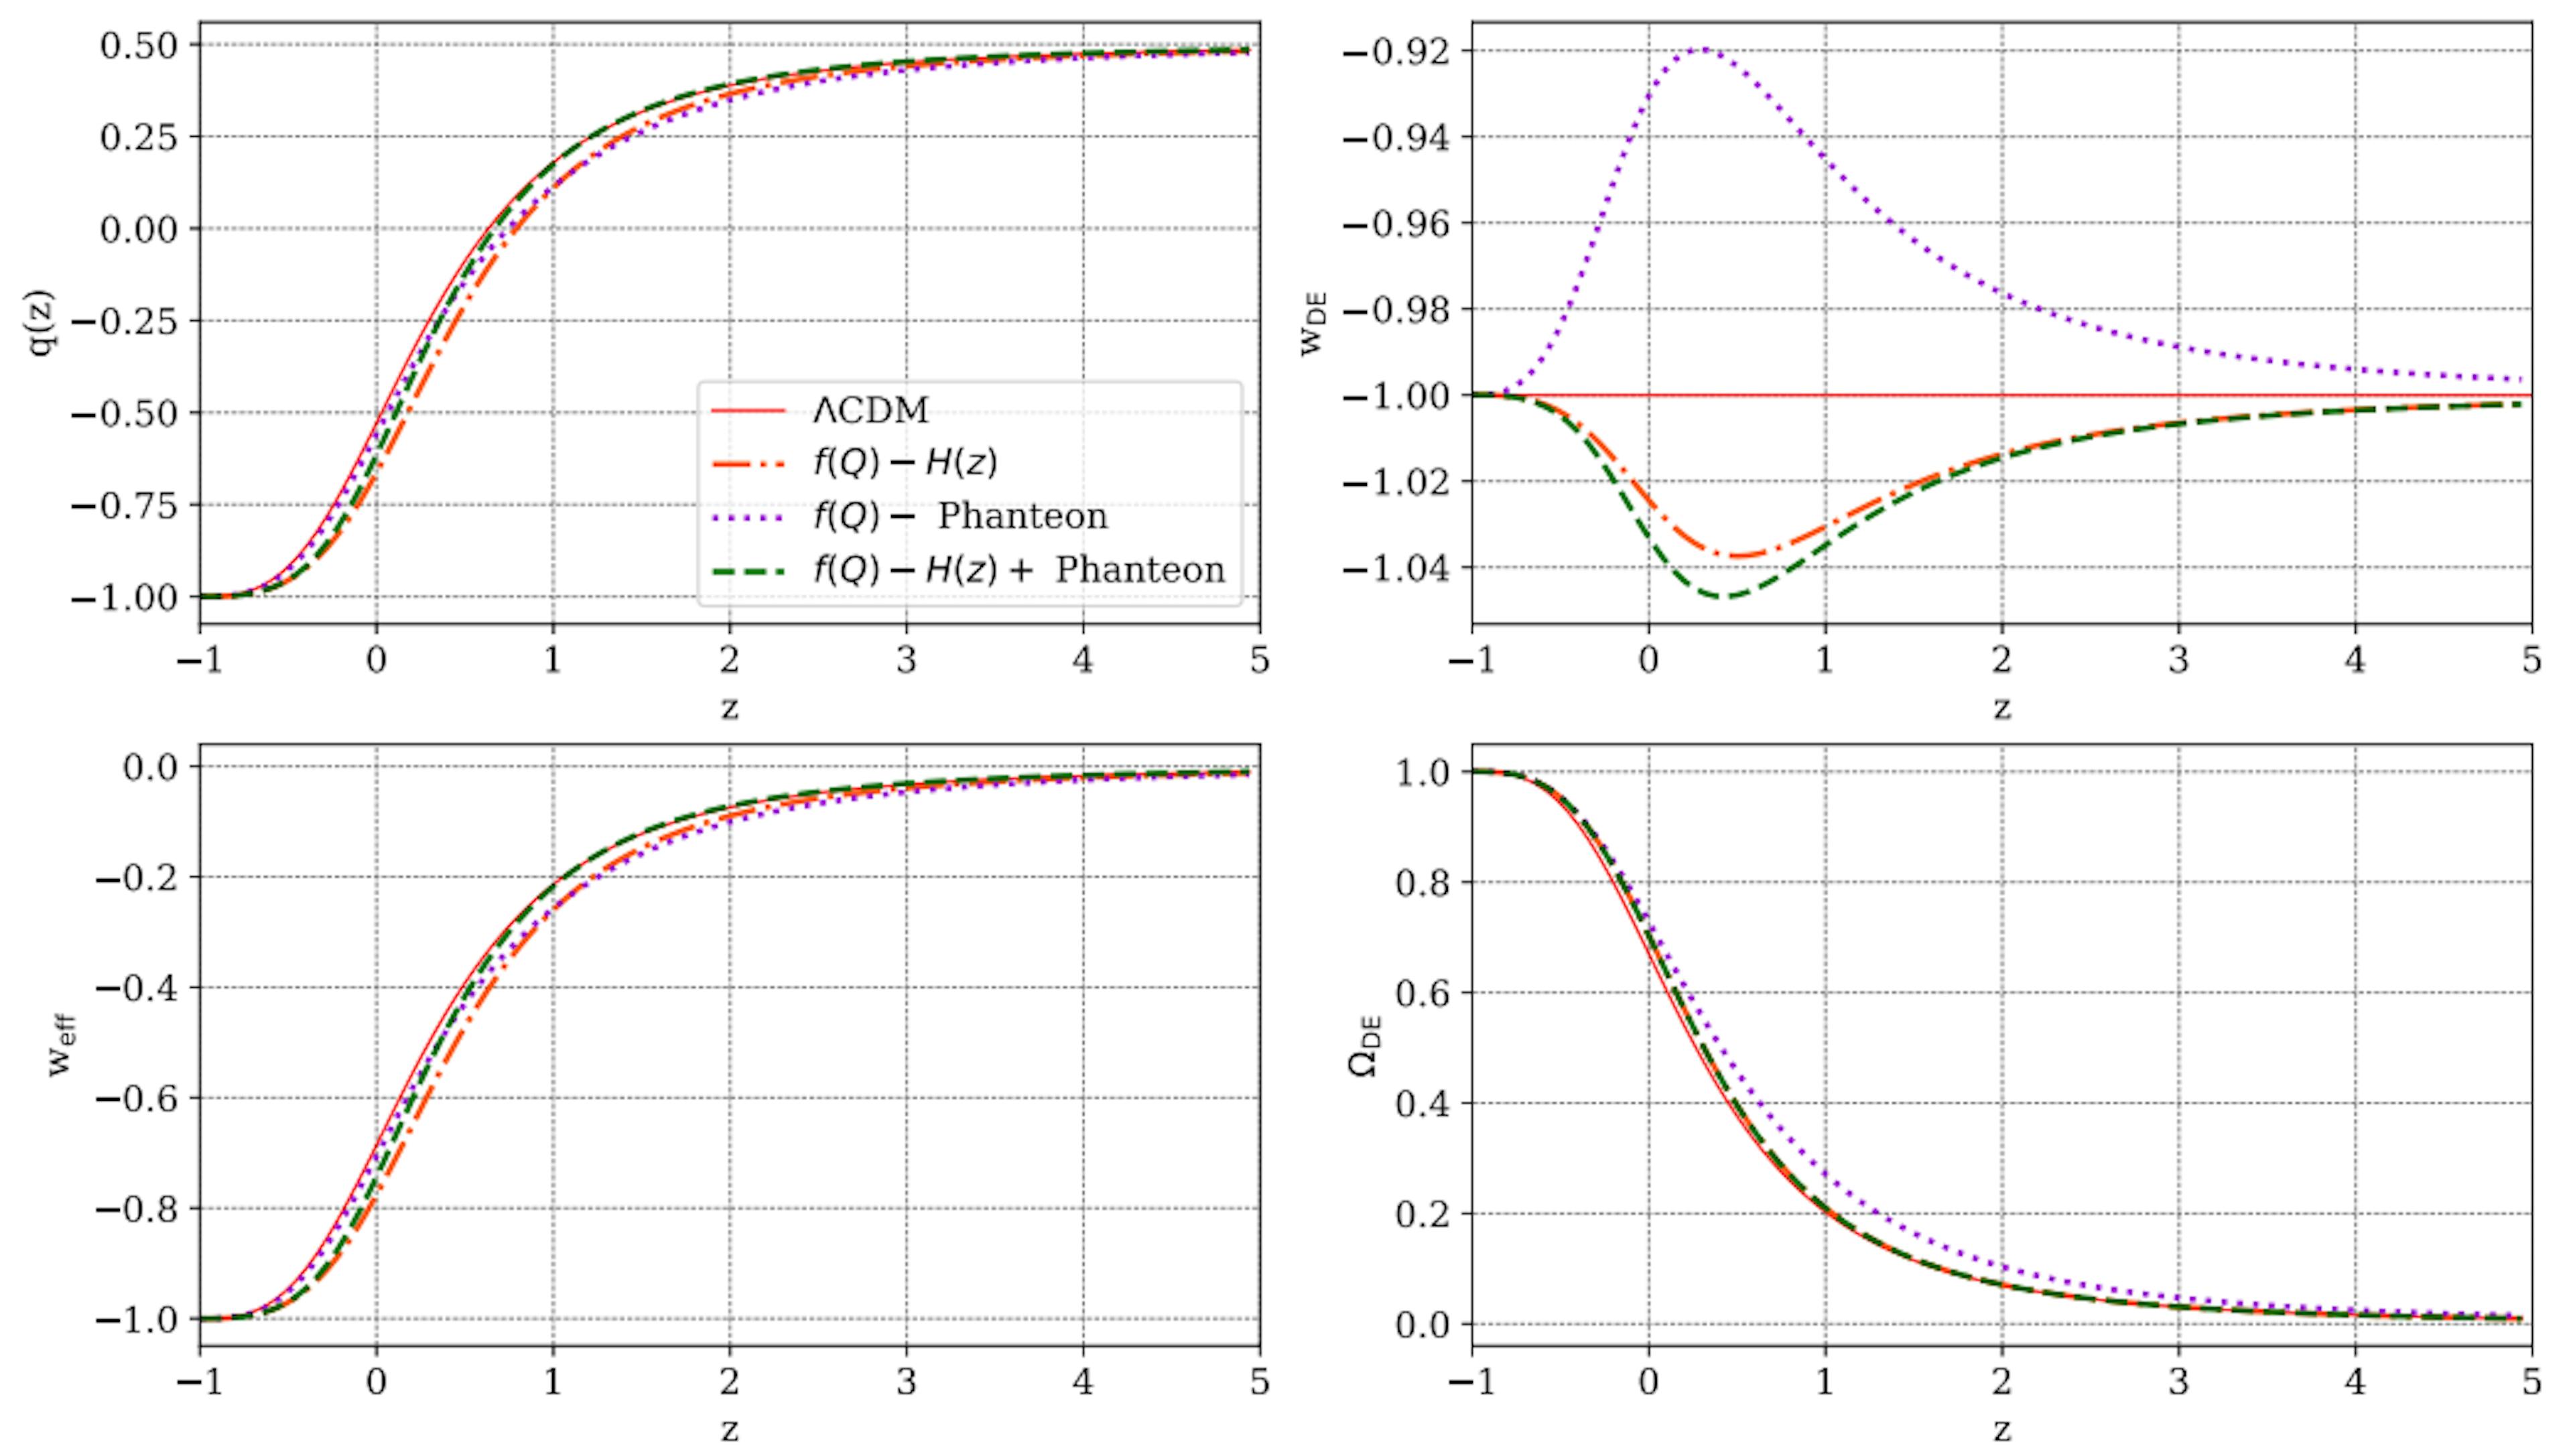 Hình 7: Sự phát triển của một số tham số vũ trụ so với dịch chuyển đỏ, z, như được dự đoán cho mô hình f(Q) được trình bày trong nghiên cứu này, so với các dự đoán ΛCDM (đường toàn màu đỏ). Trong mỗi bảng, các đường chấm màu cam, chấm tím và xanh lục đứt nét là kết quả của các ràng buộc tham số từ các mẫu H(z), Pantheon và H(z)+ Pantheon tương ứng.